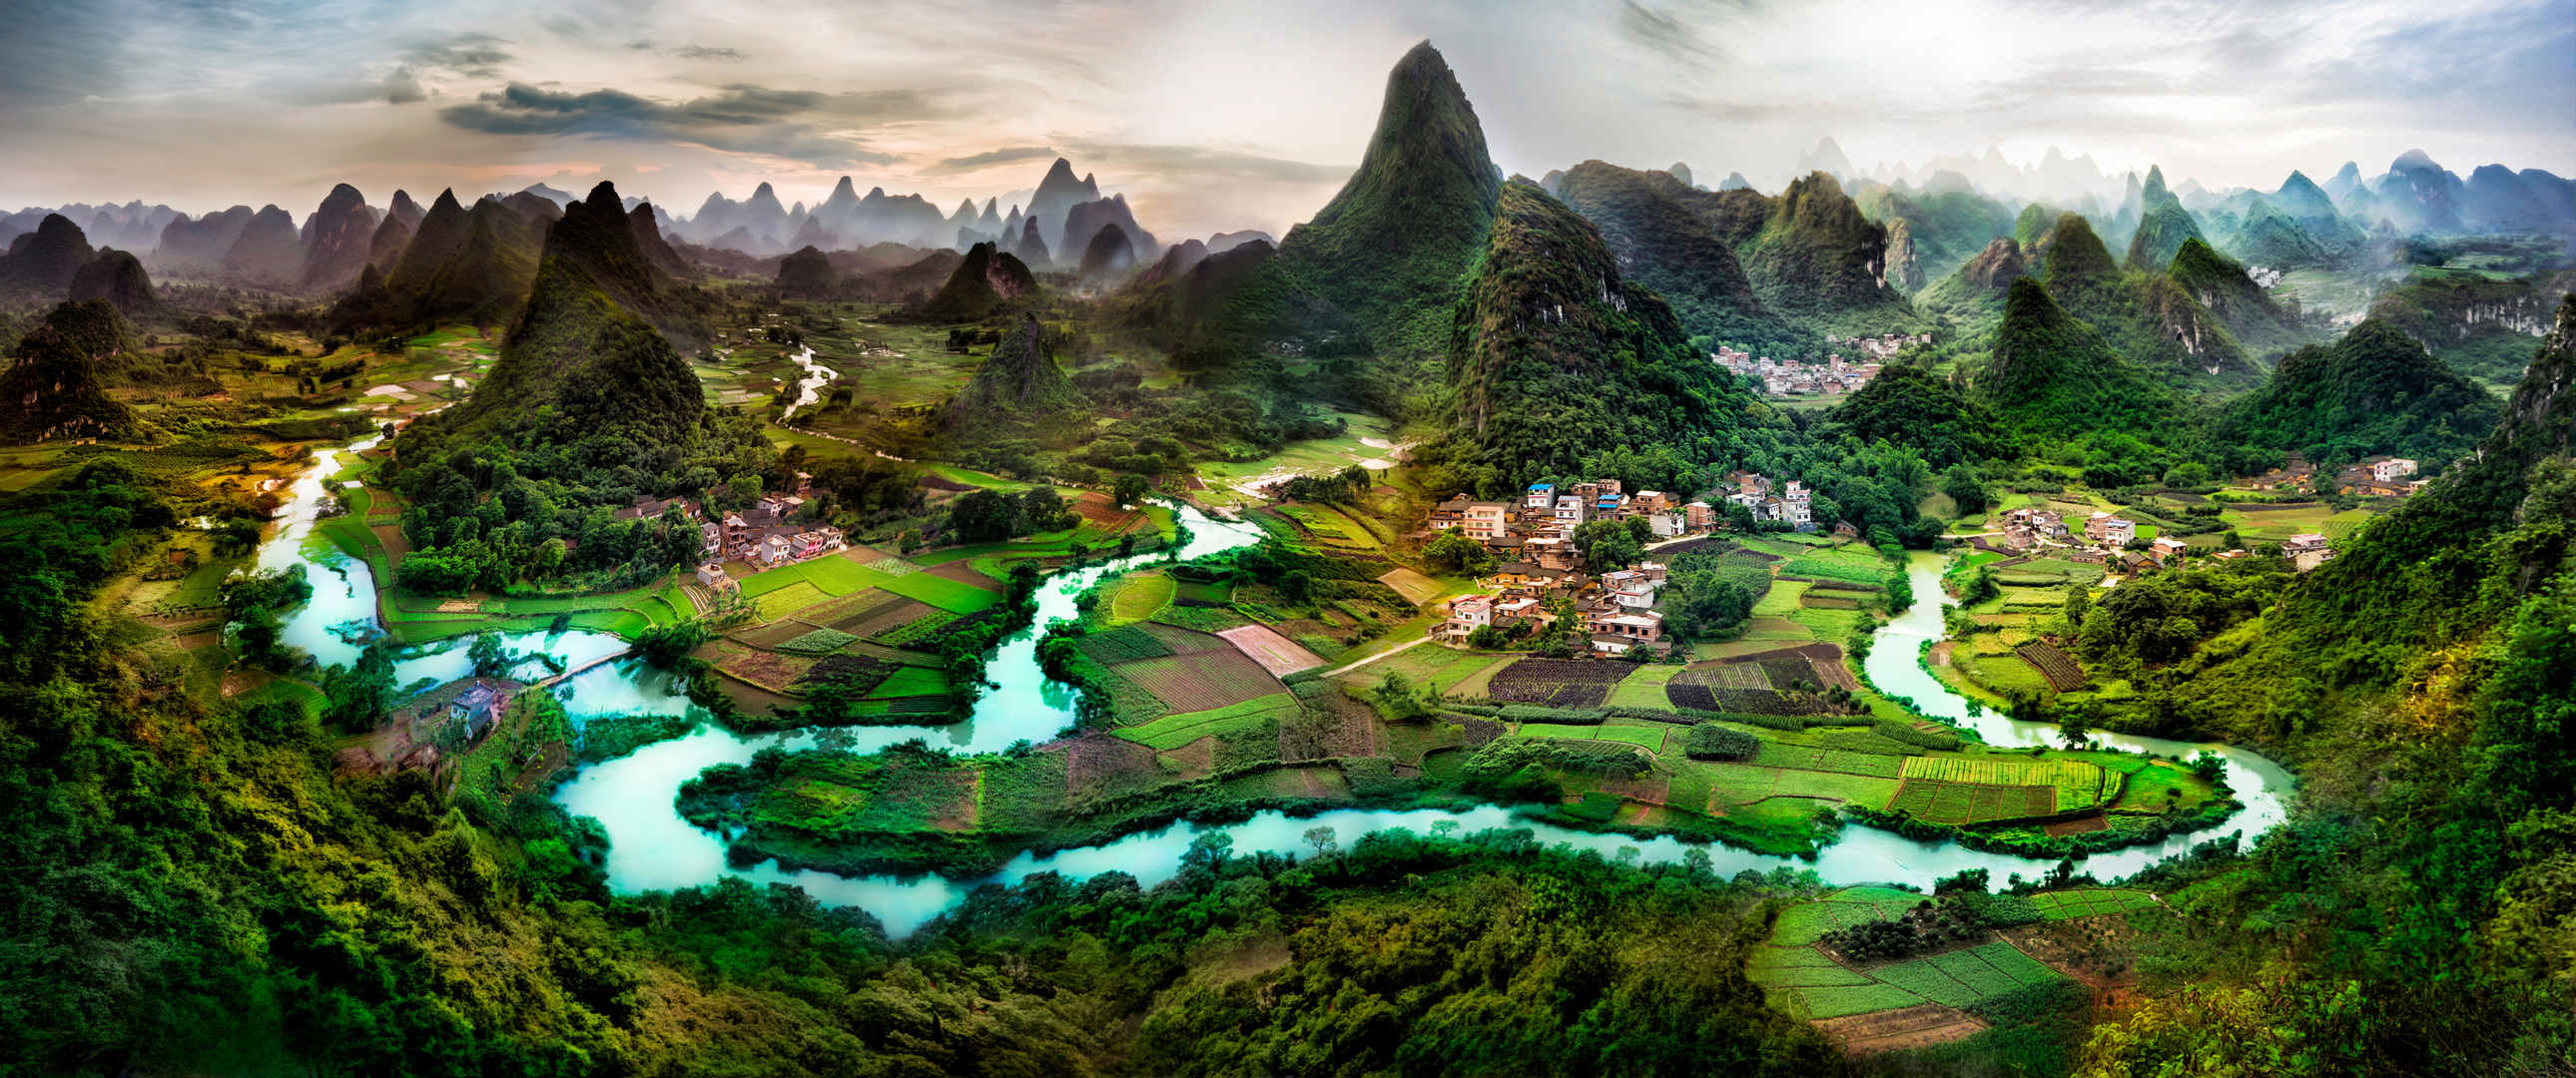 广西桂林山水风景全景鸟瞰摄影3440x1440带鱼屏图片